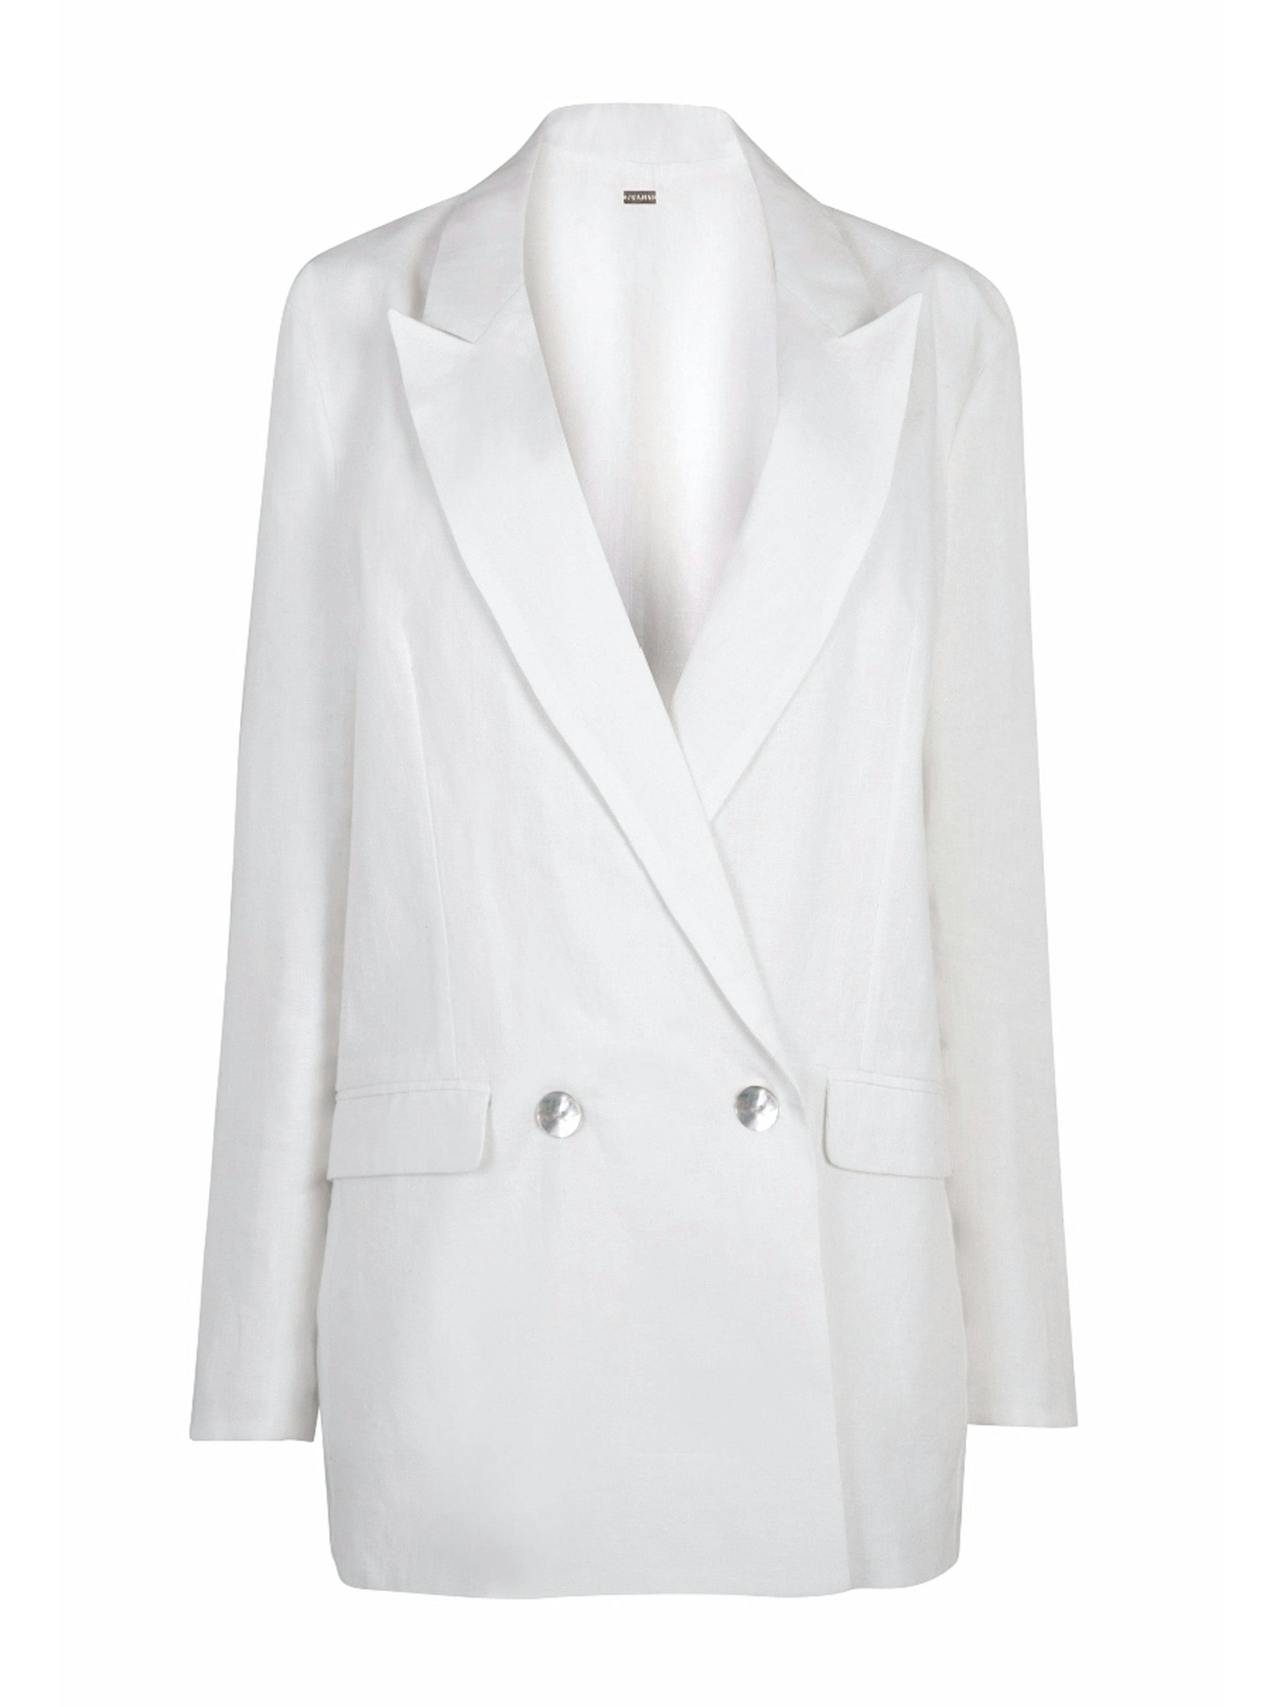 White Nomade suit jacket